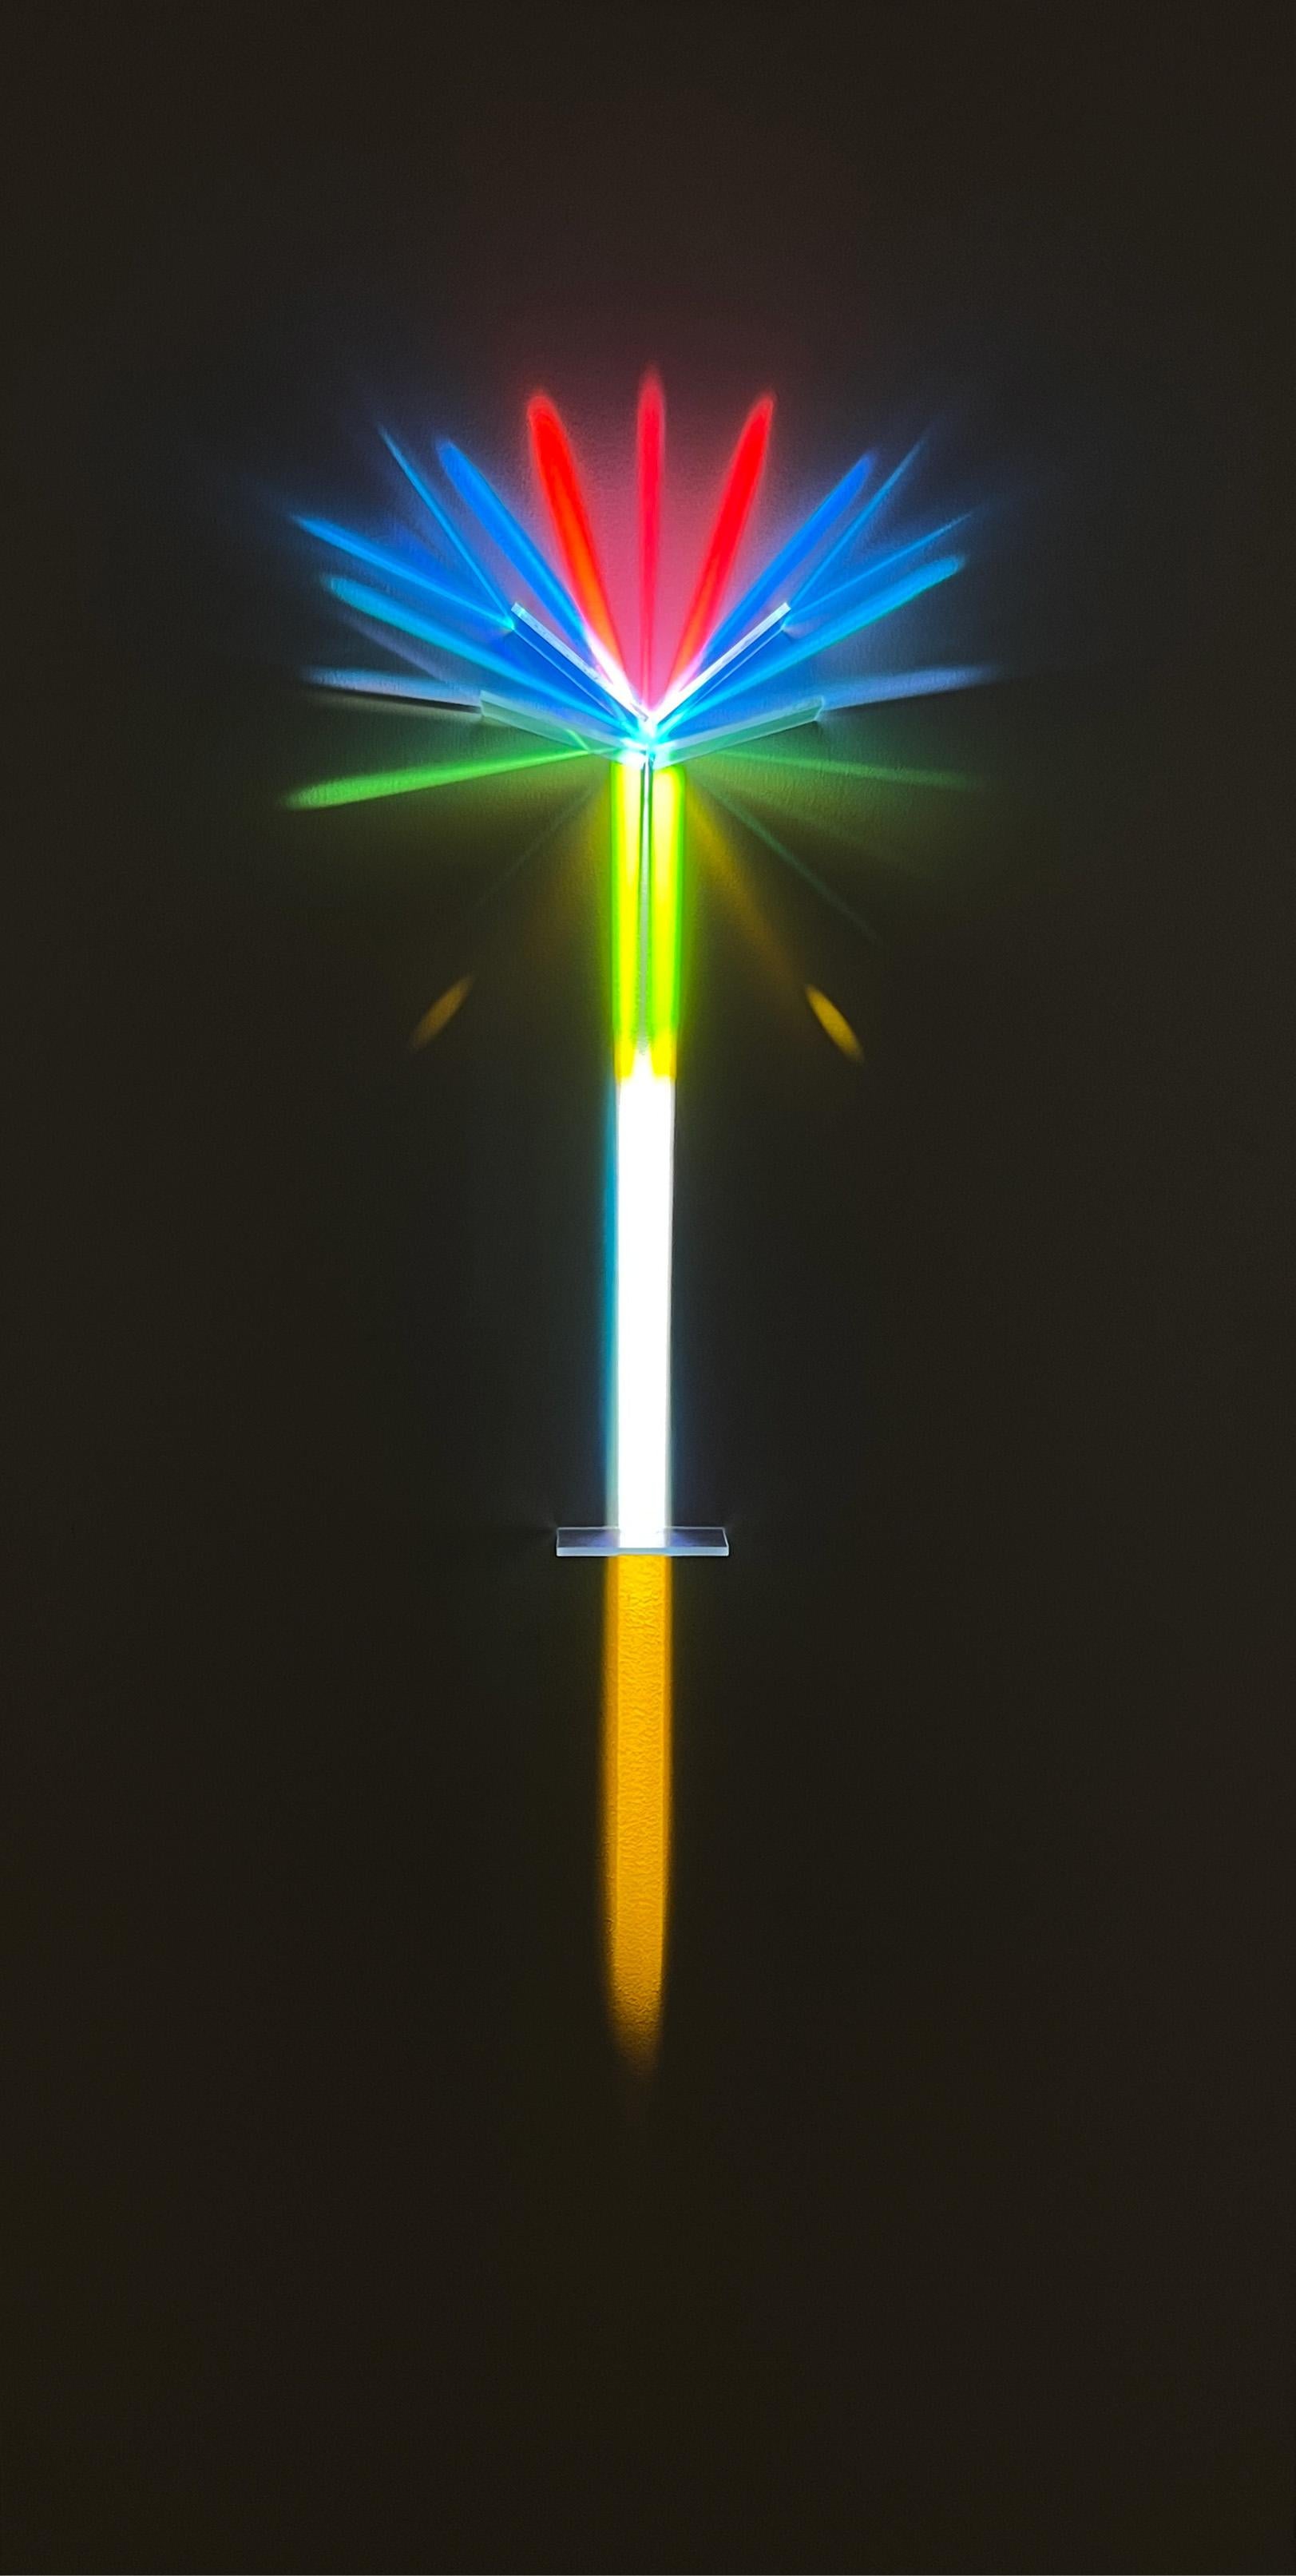 "Jardin des Lights #6" Installation lumineuse mixte 48 x 24 in par astrothebaptist

Filtres optiques dichroïques sur panneau de bouleau en bois peint et installation d'une seule source de lumière

Composants : 
Panneau blanc
Verre